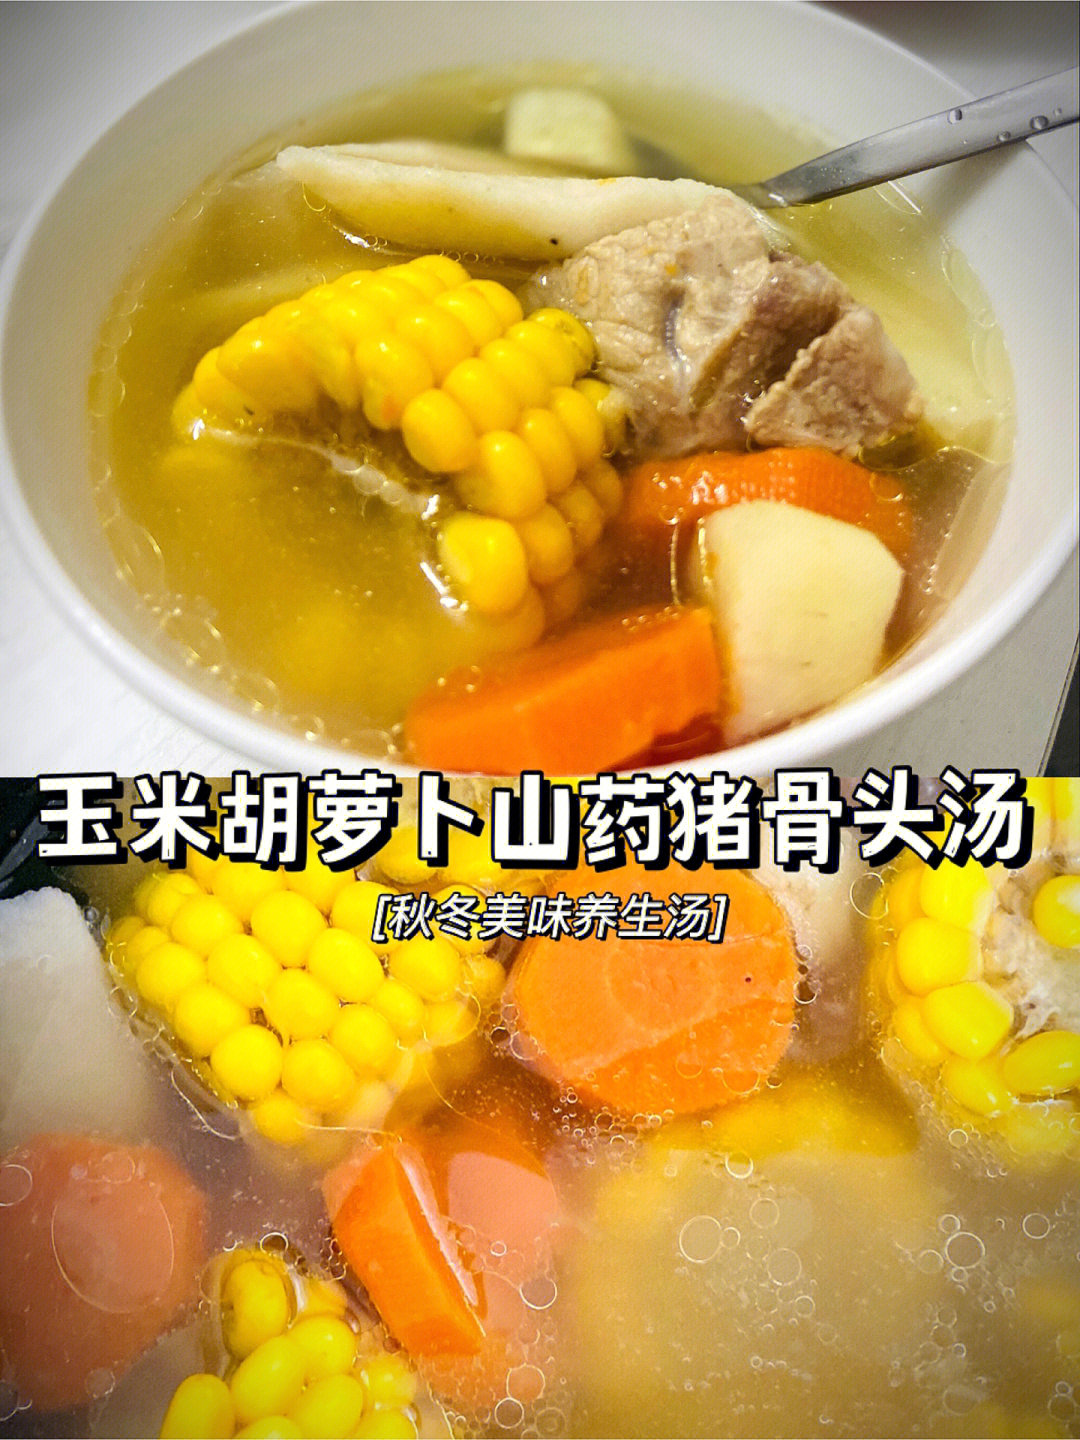 家常煲汤97一定是玉米胡萝卜山药汤了超好喝6015味道鲜美又清甜